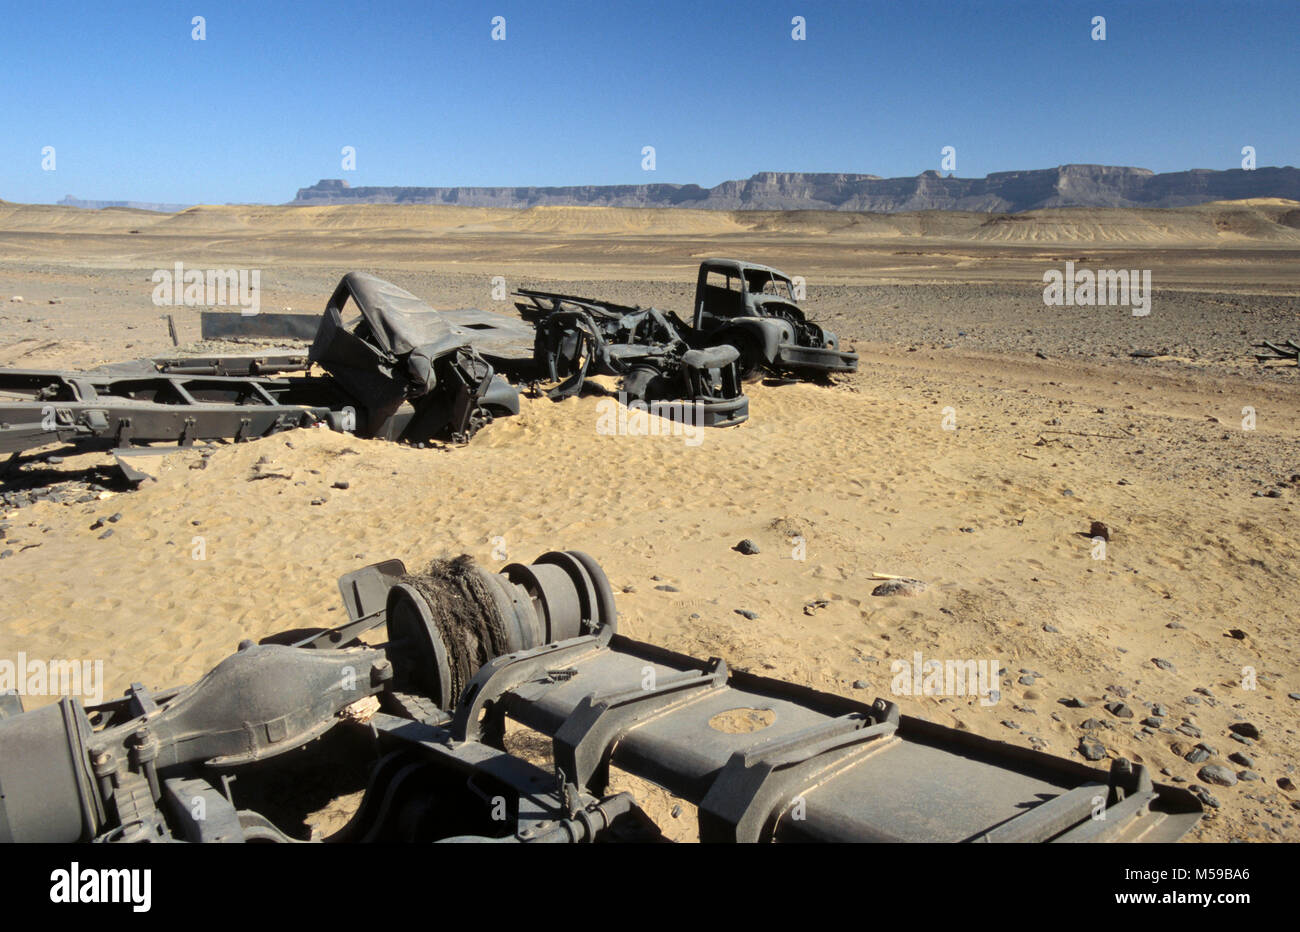 La Libye. Ghat désert du Sahara. Des camions de l'armée italienne fait naufrage d'une Seconde Guerre mondiale bataille avec les Français dans le désert du Sahara. Banque D'Images